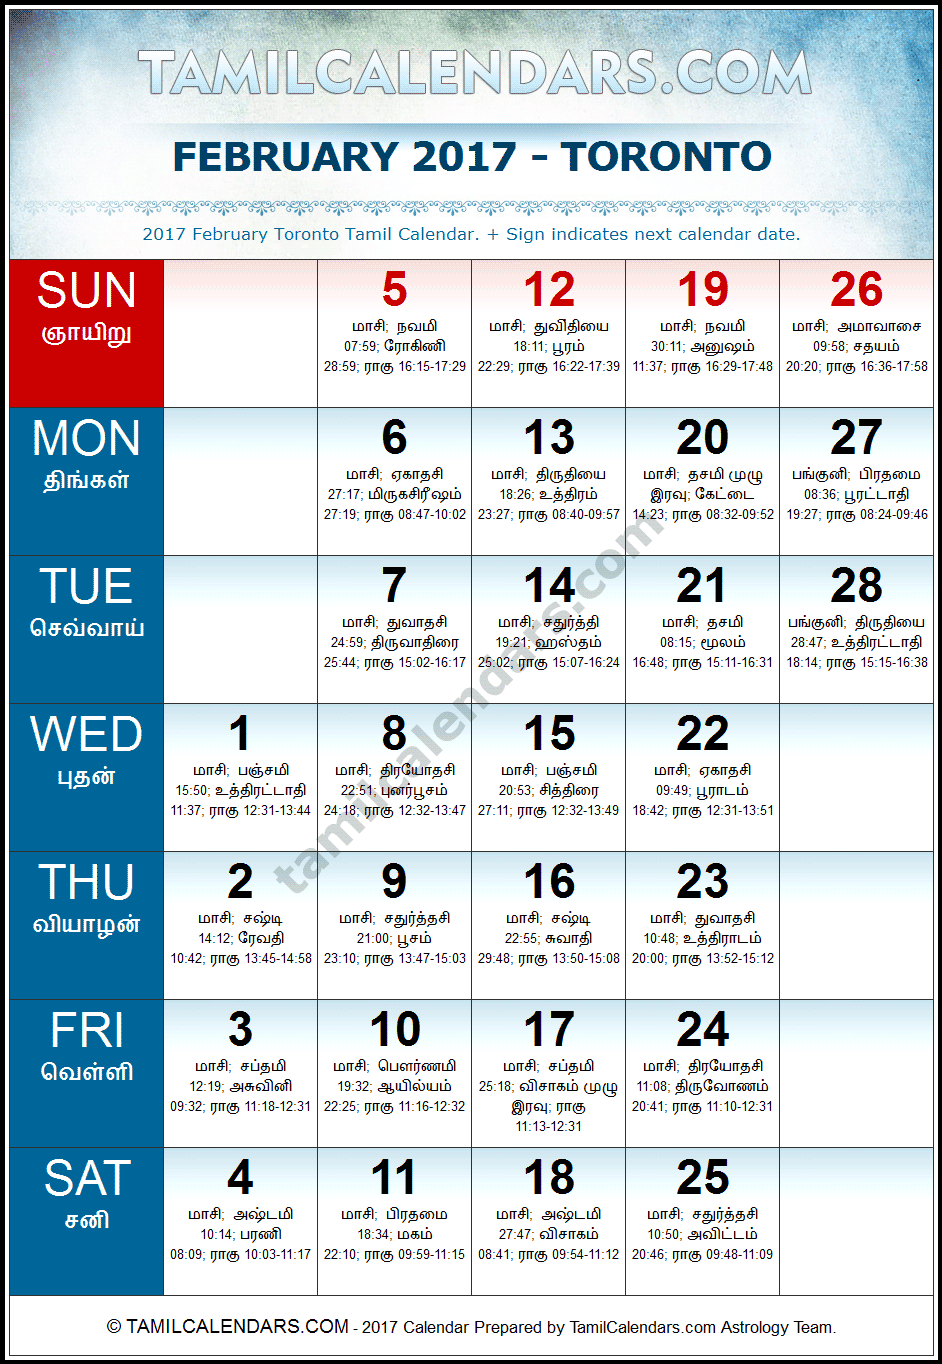 February 2017 Tamil Calendar for Toronto, Canada